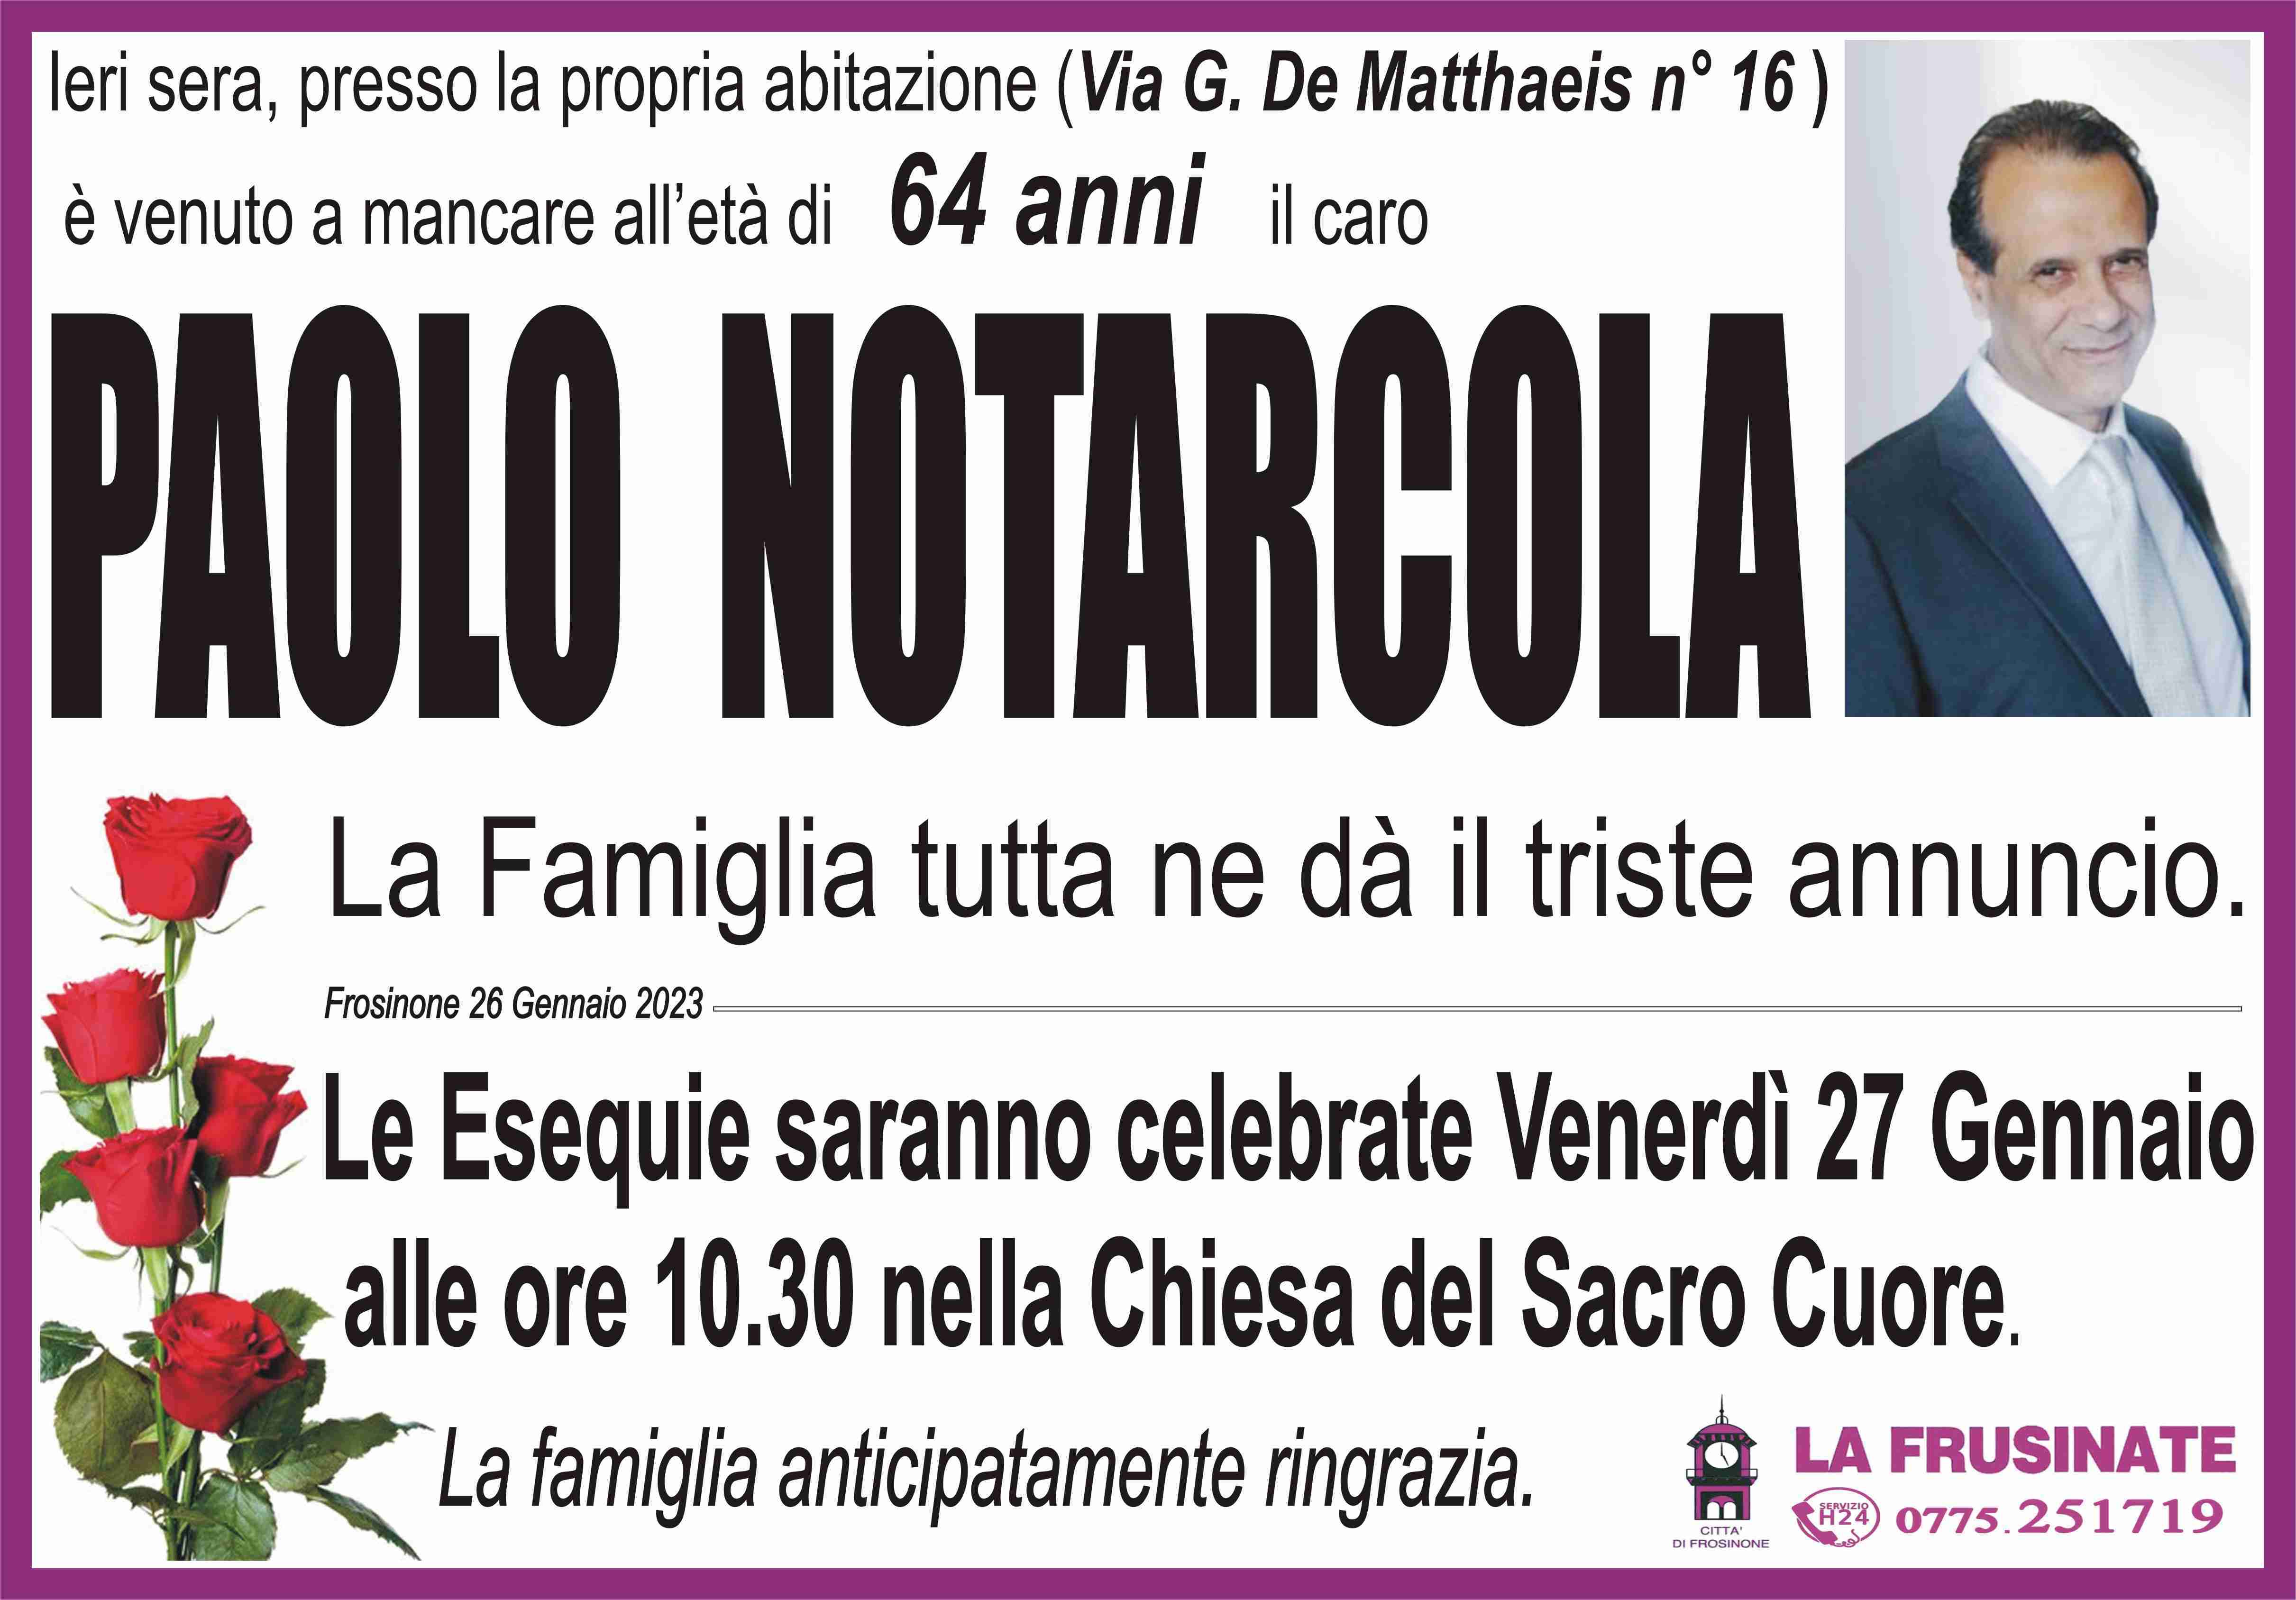 Paolo Notarcola